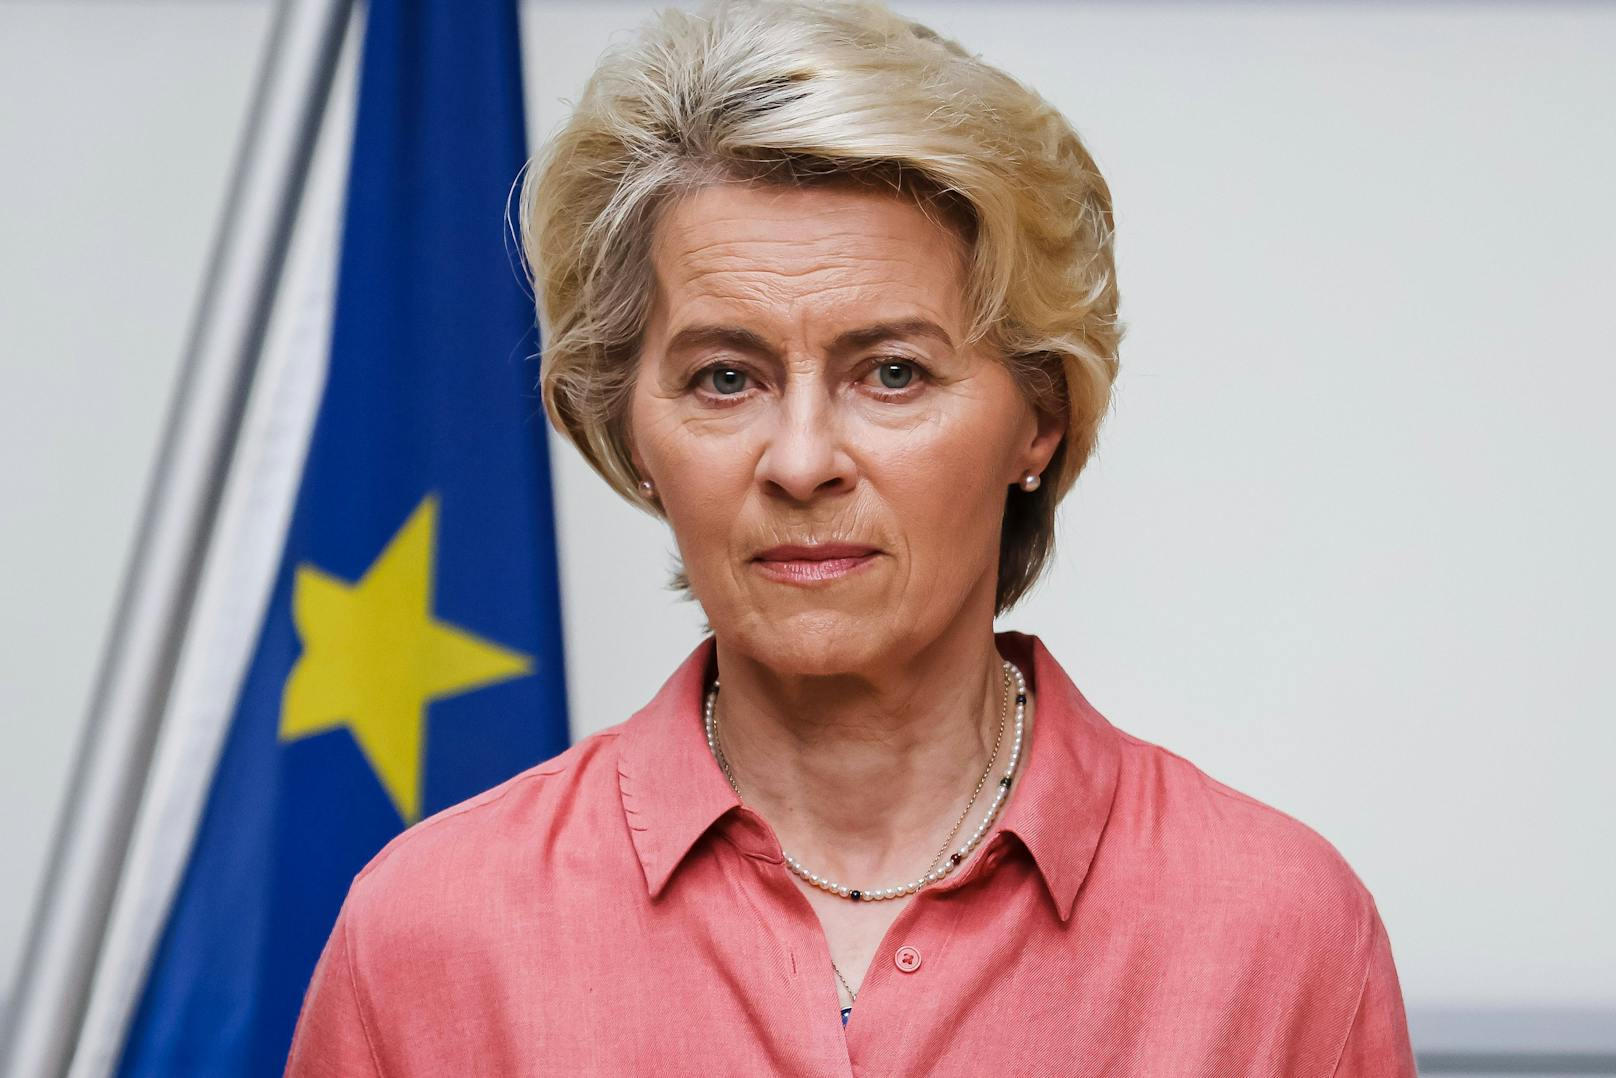 Unter den Innenministern der EU-Ländern herrscht derzeit Uneinigkeit. Im Bild die EU-Kommissionspräsidentin Ursula von der Leyen.